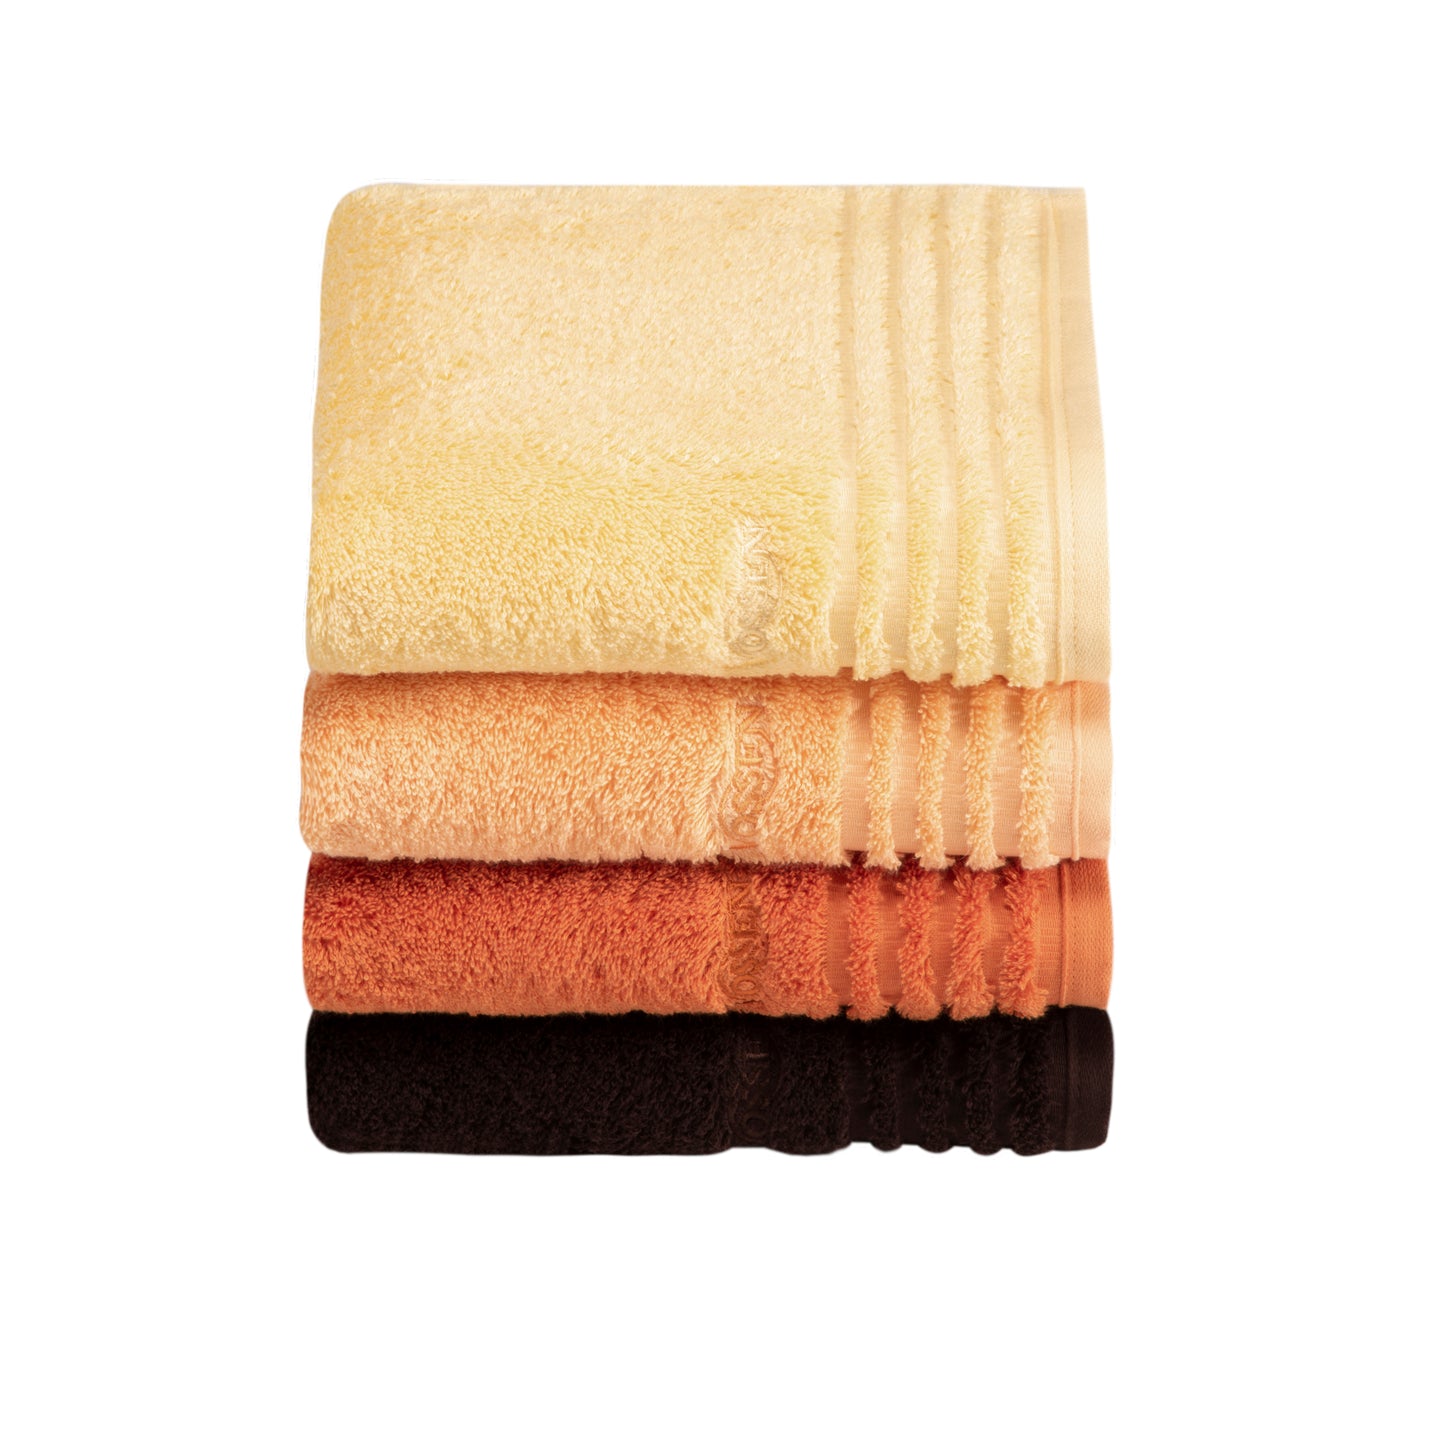 Handtuch aus Bio-Baumwolle in Apricot im Wiener Stil